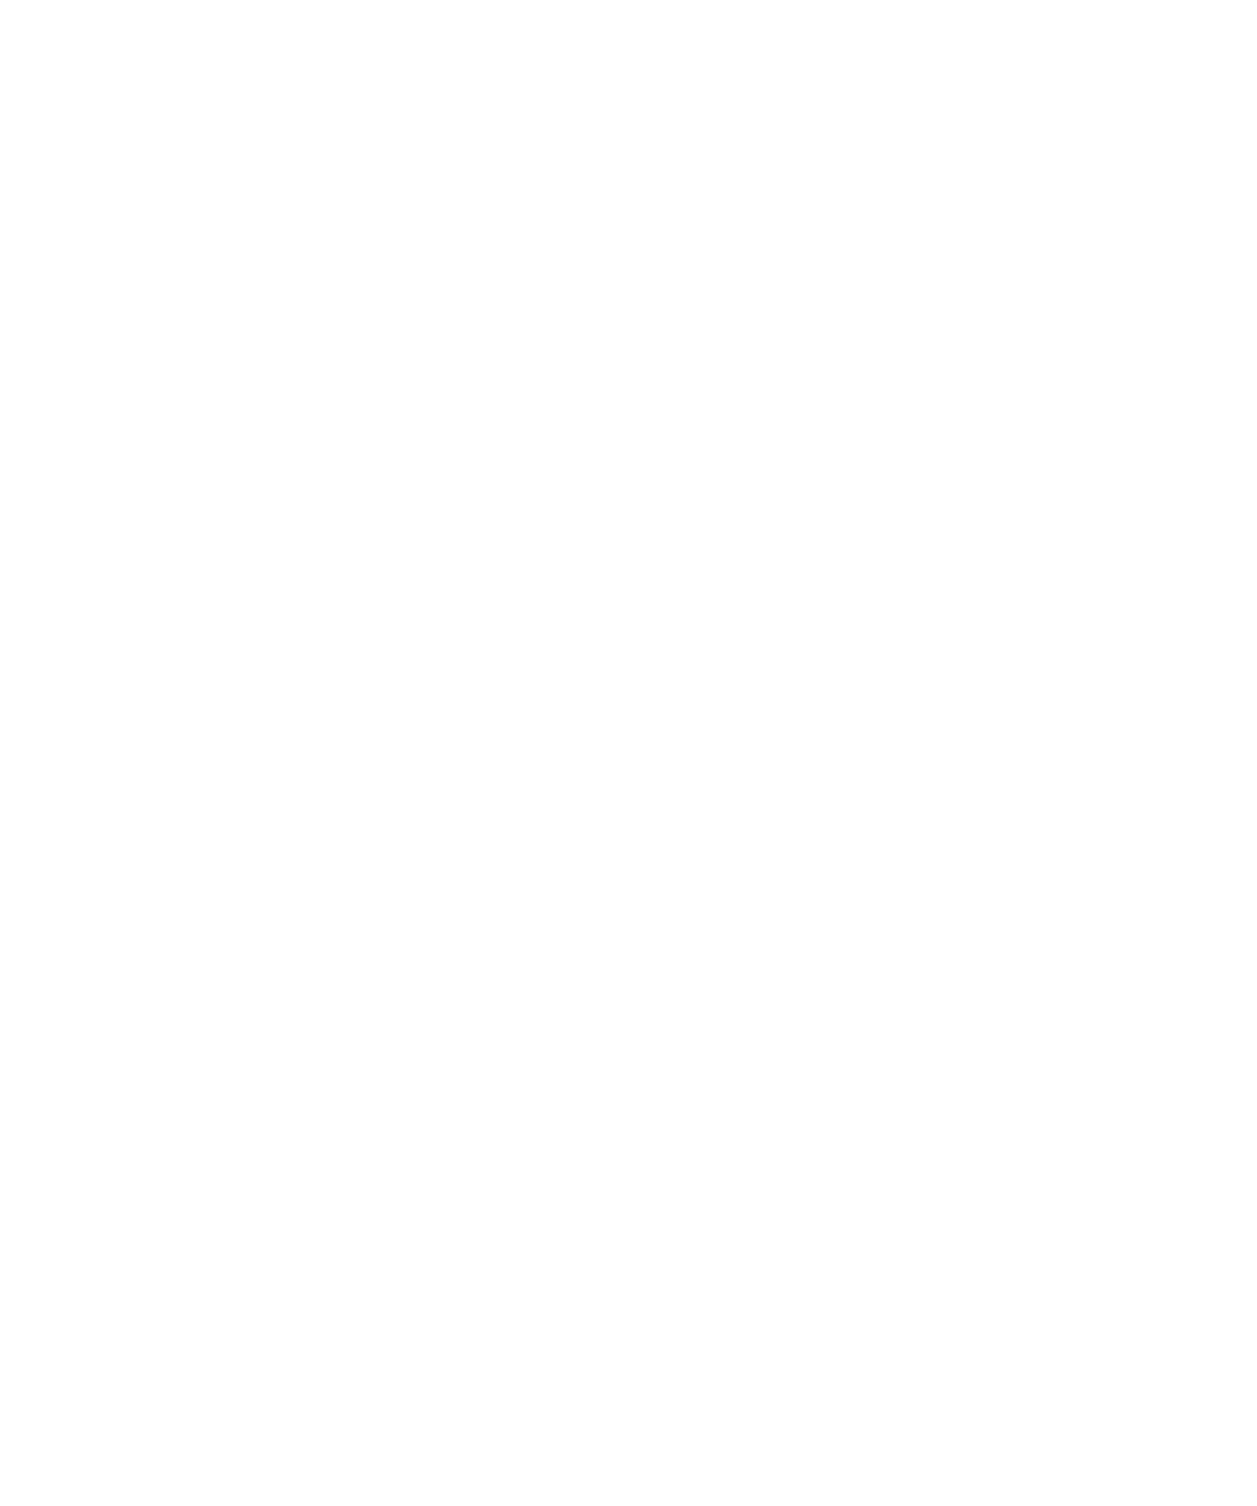 De blije merkontwikkelaar Diakonessenhuis logo